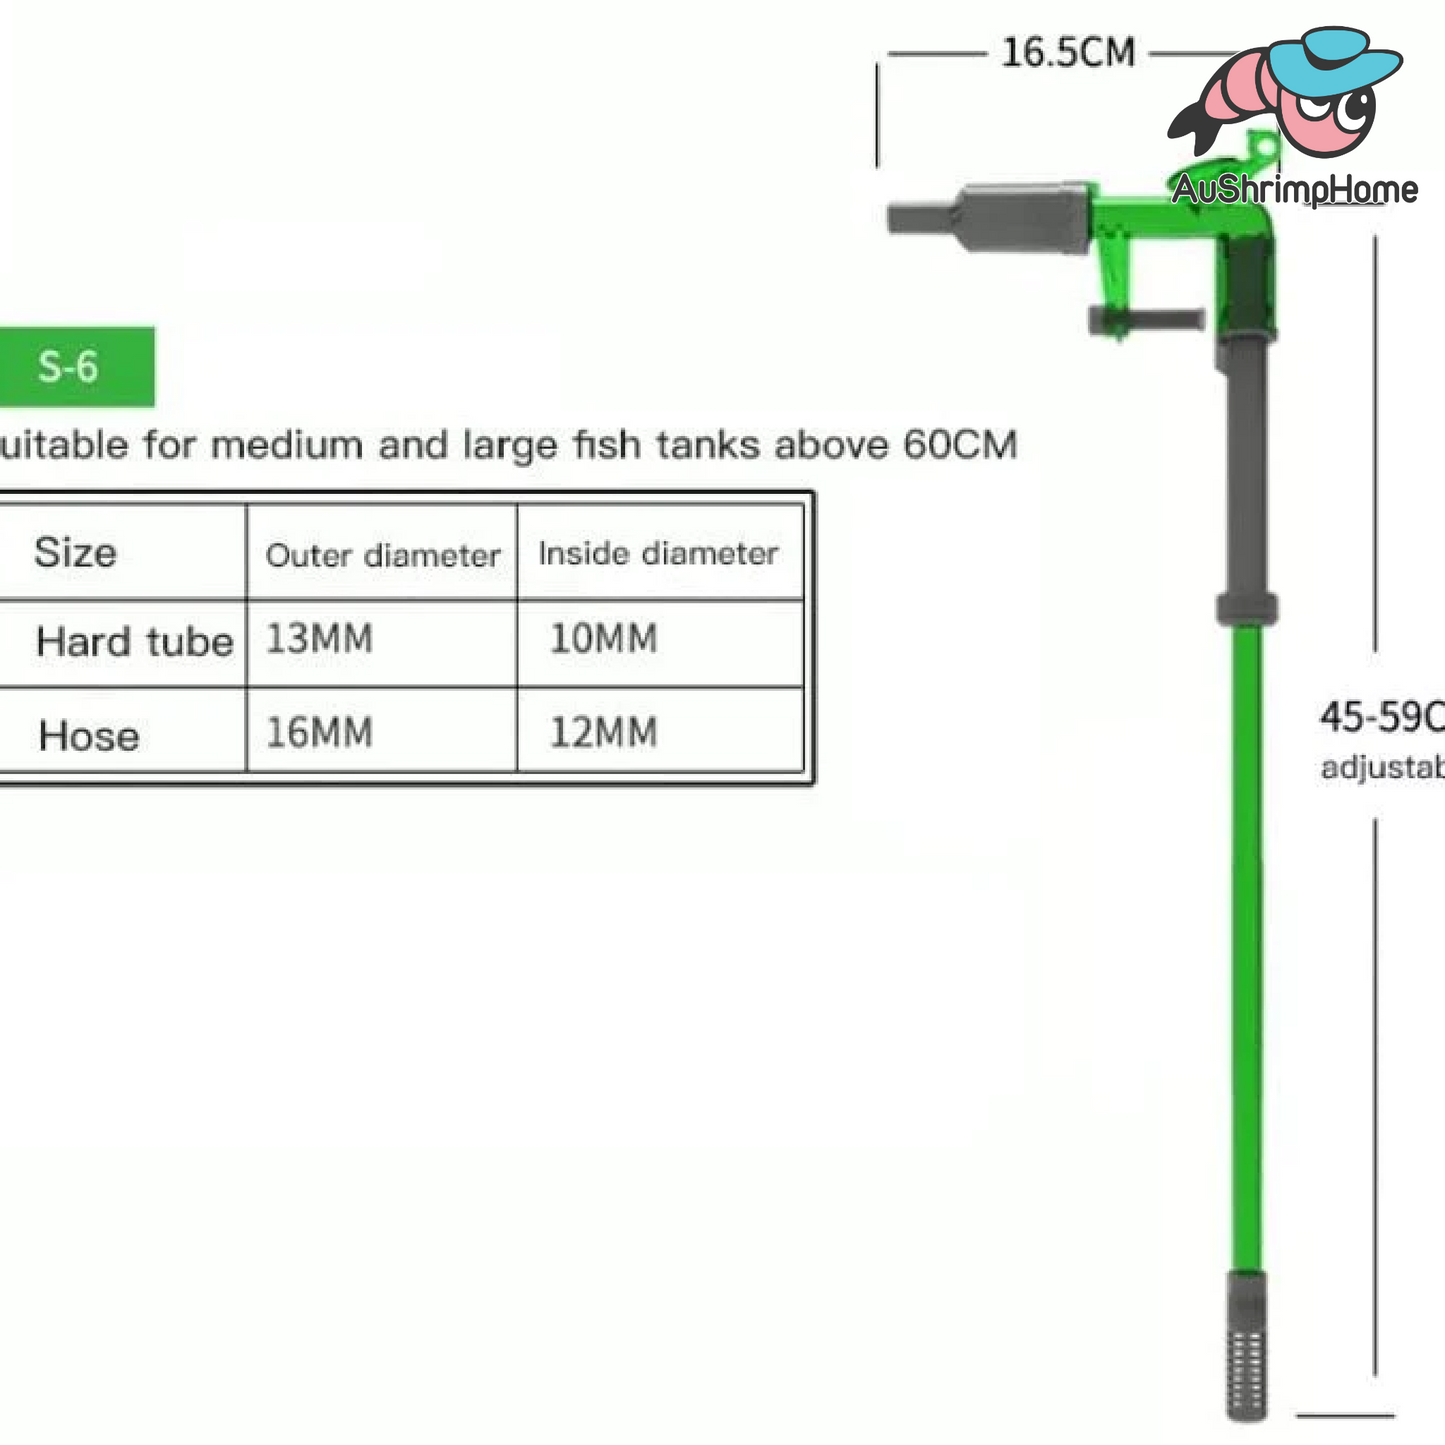 Qanvee Water Change Kit | S-6 Model